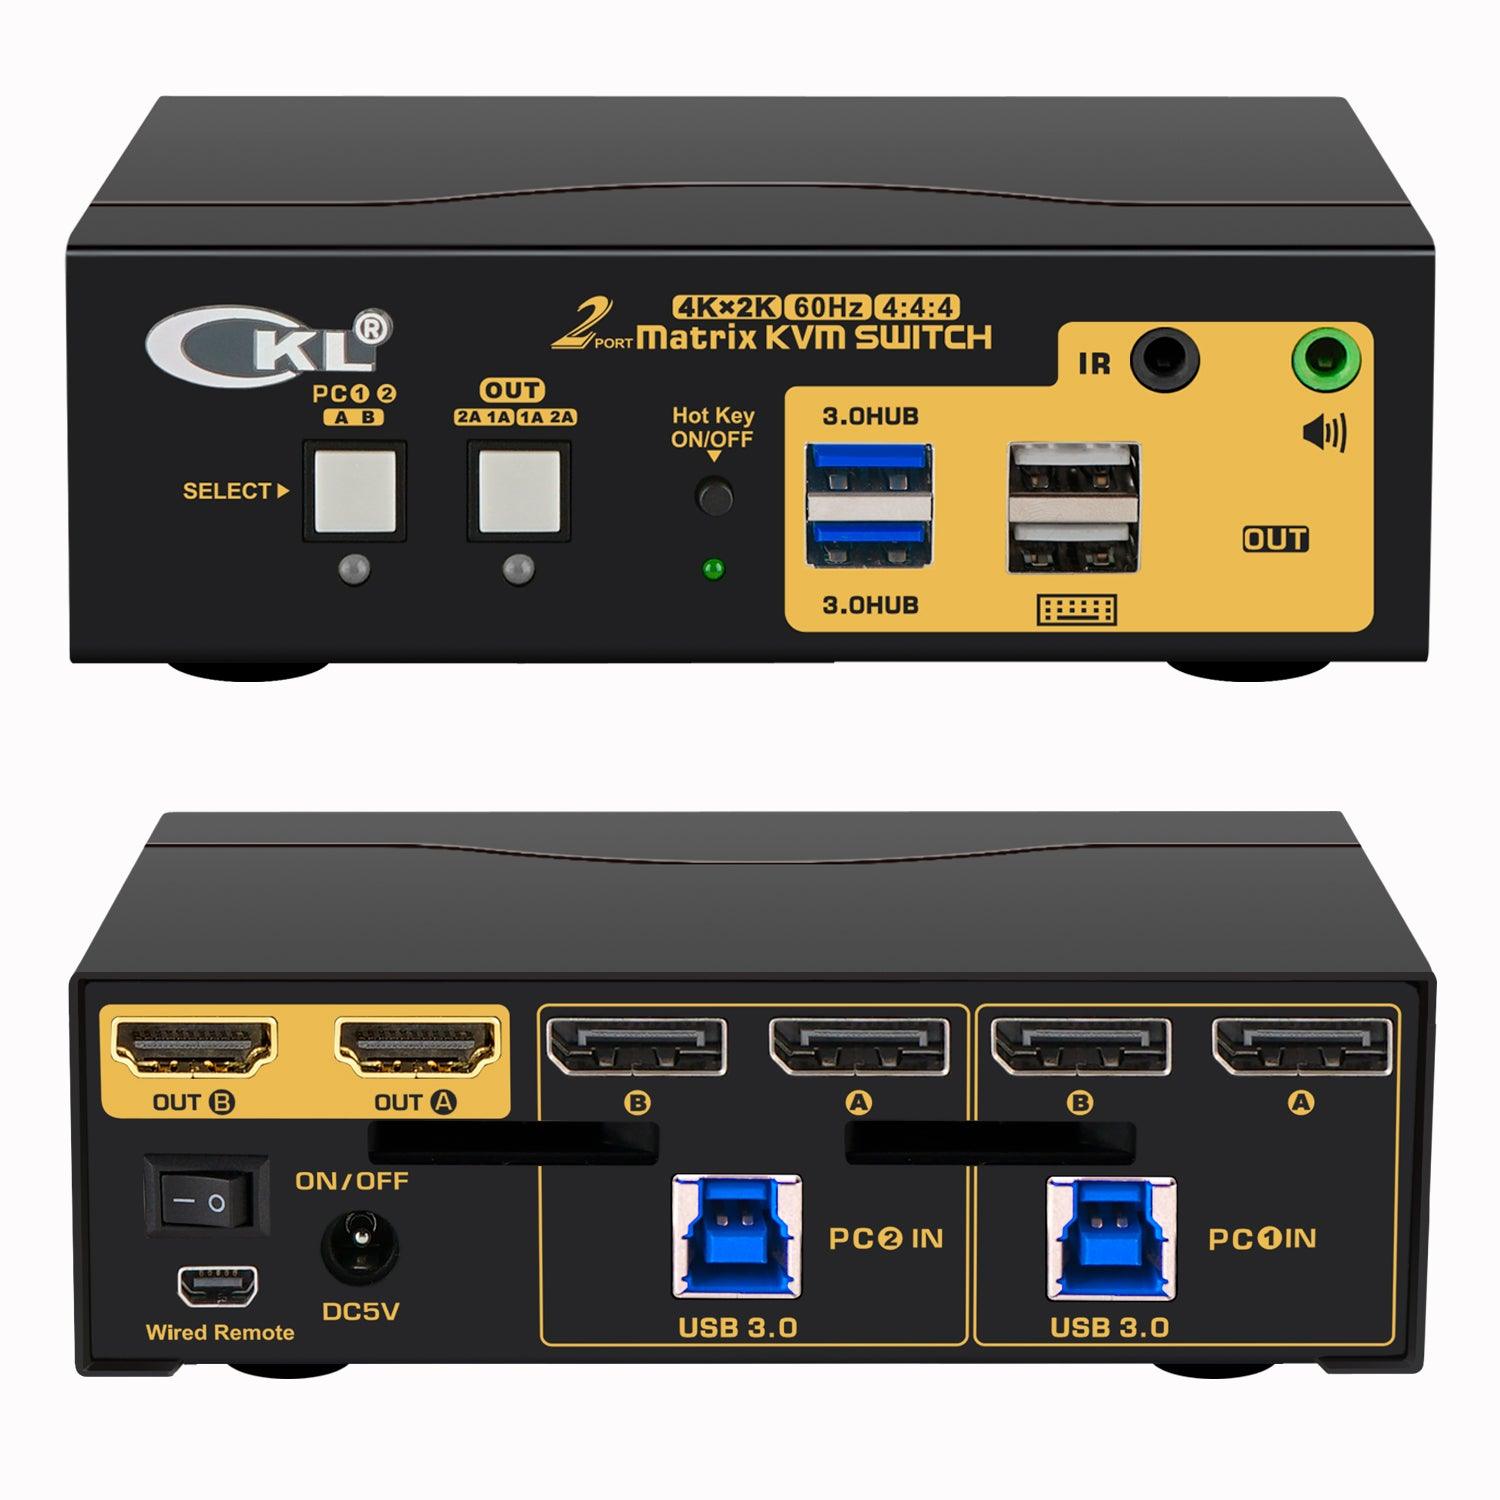 2x2 USB 3.0 Matrix KVM Switch Dual Monitor DisplayPort 1.2 4K 60Hz CKL